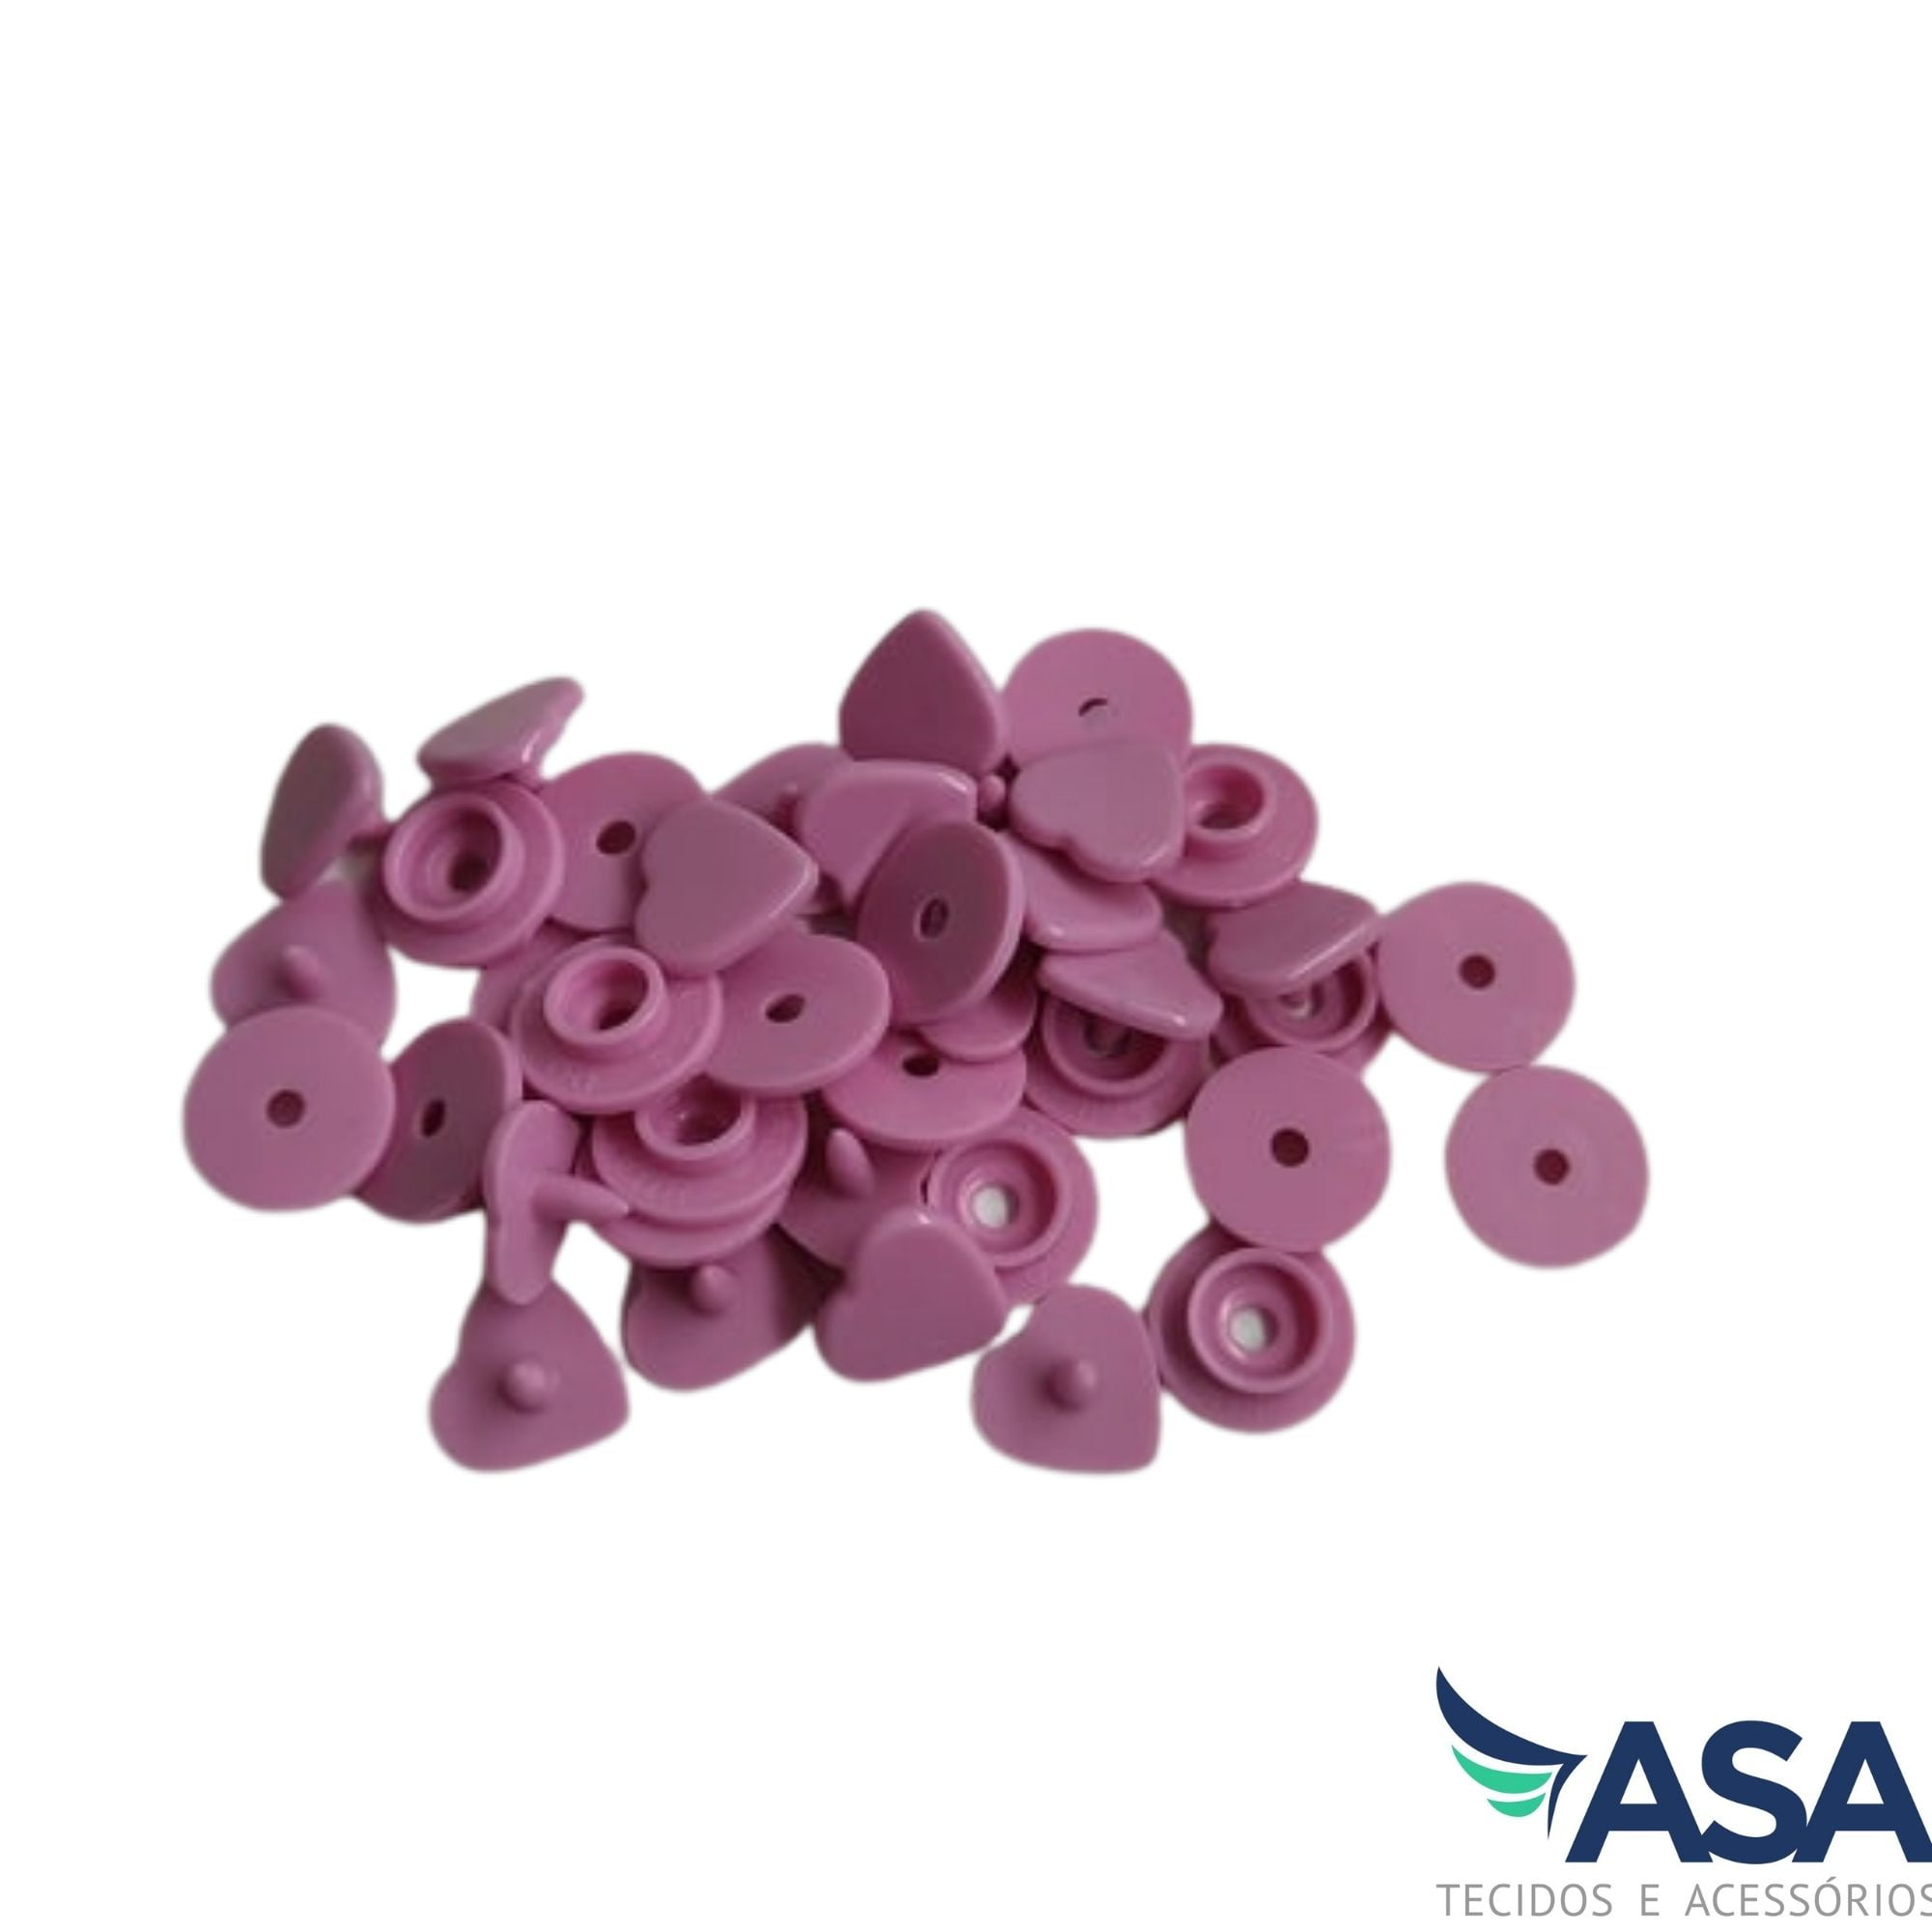 Botão de Pressão Plástico Ritas em Formato de Coração - Rosa Flamingo - 10mm - Pacote com 10 unidades